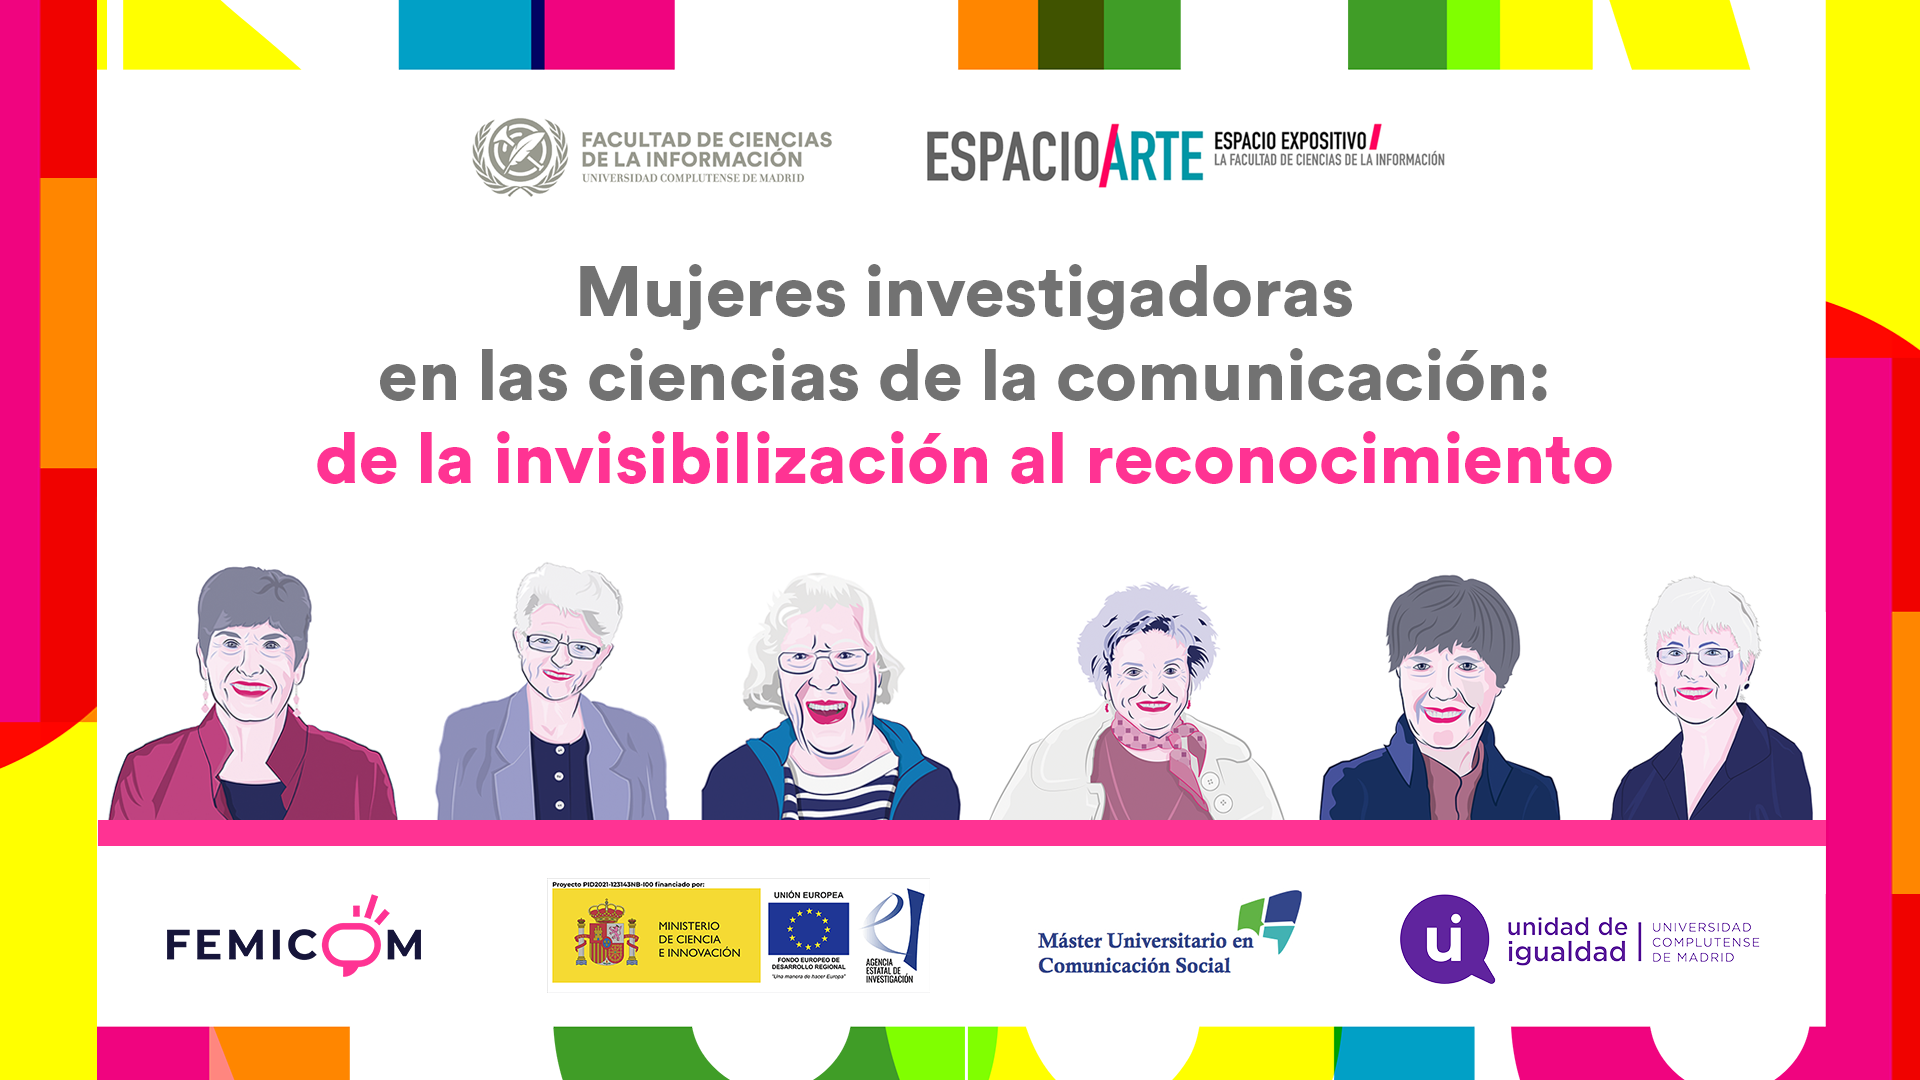 Mujeres investigadoras en las ciencias de la comunicación: de la invisibilización al reconocimiento